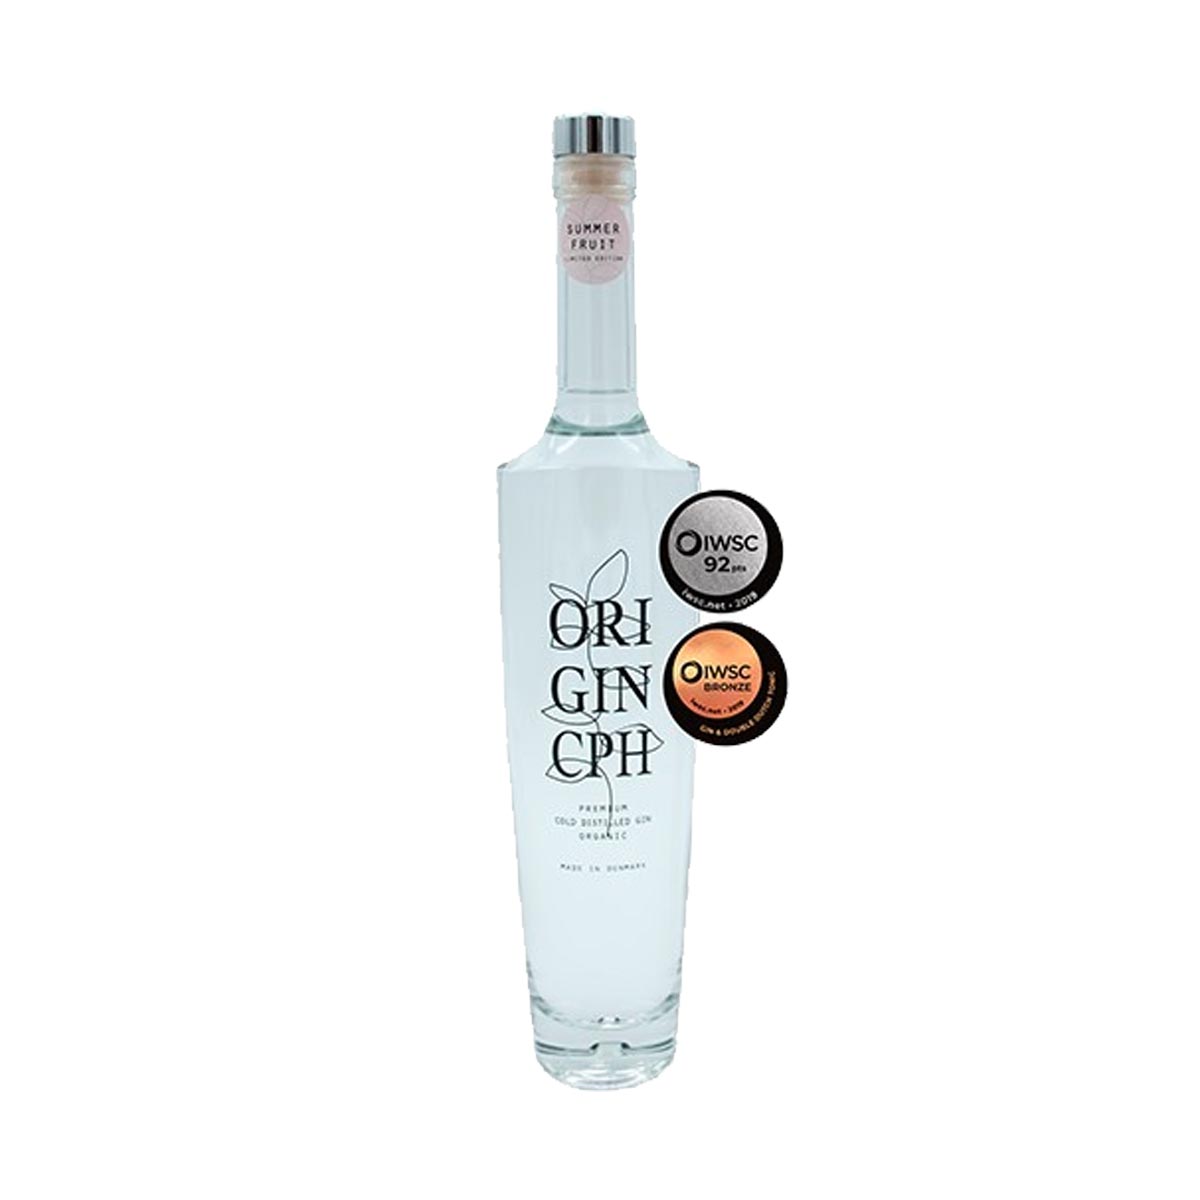  ORI GIN CPH Summer Fruit Gin